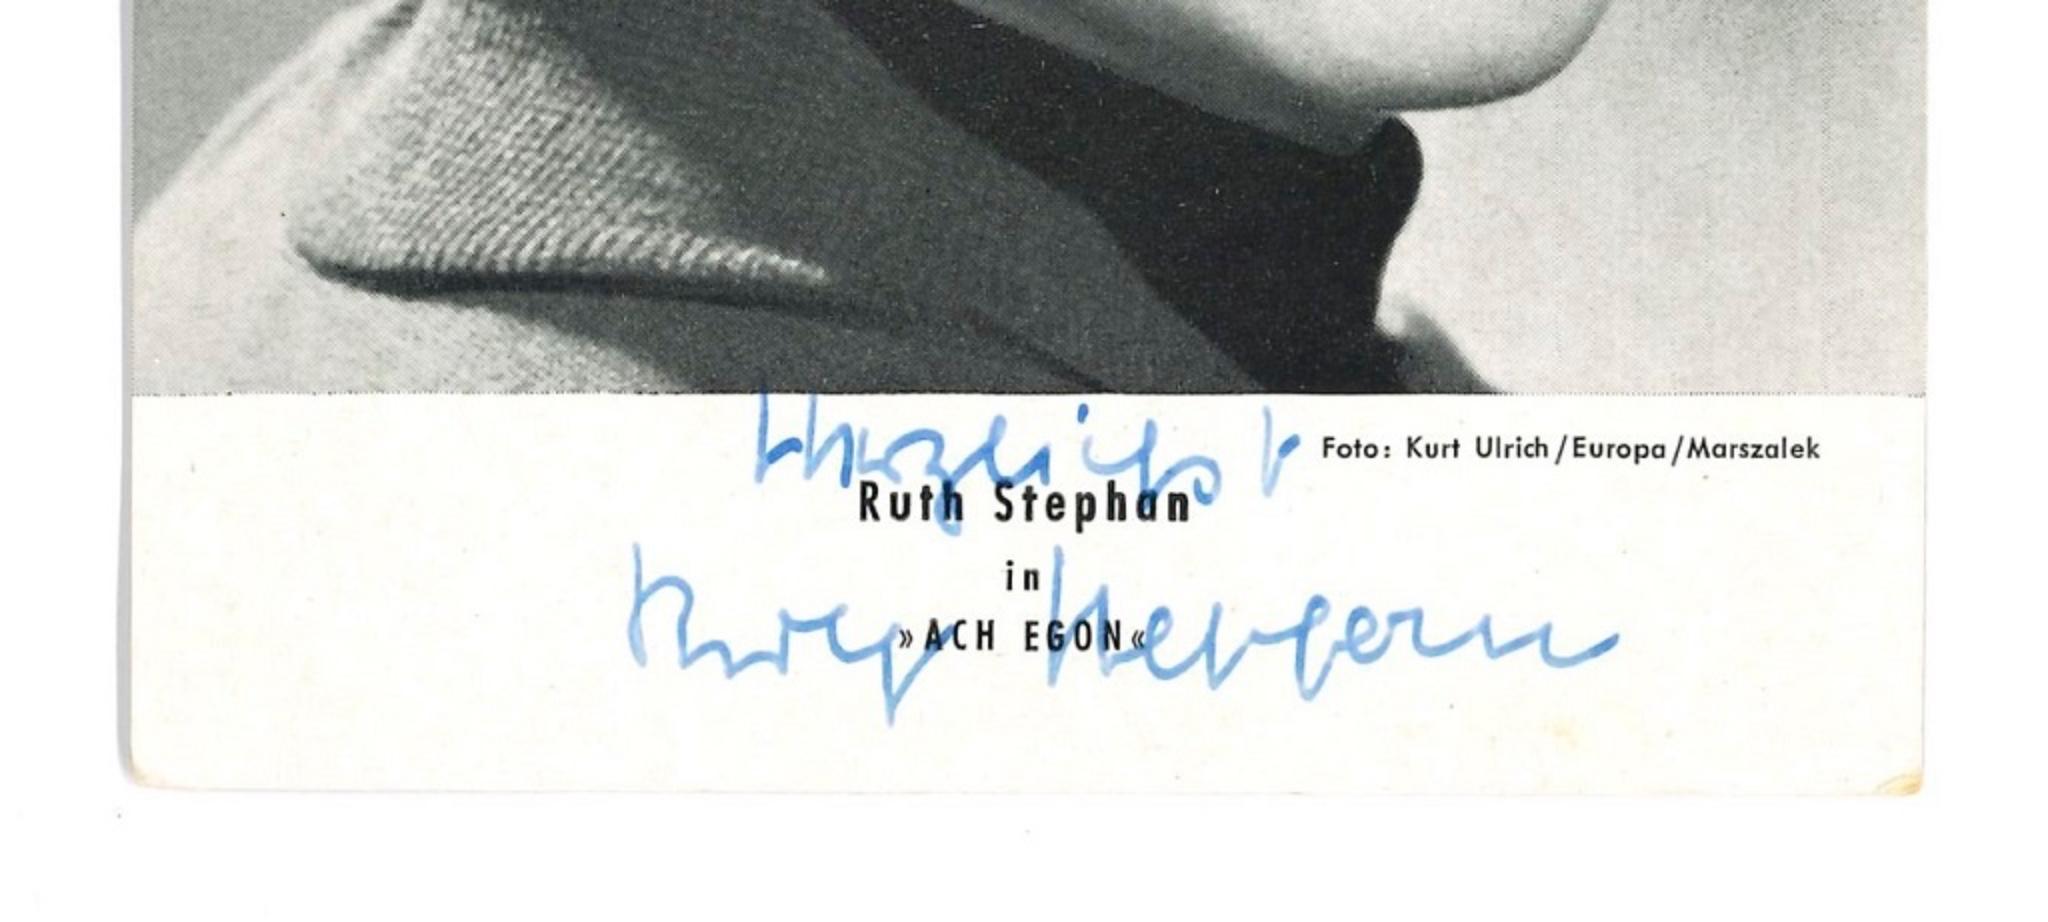 Autogramm von Ruth Stephan - Vintage-Postcard mit B/W - 1960er Jahre – Photograph von Unknown